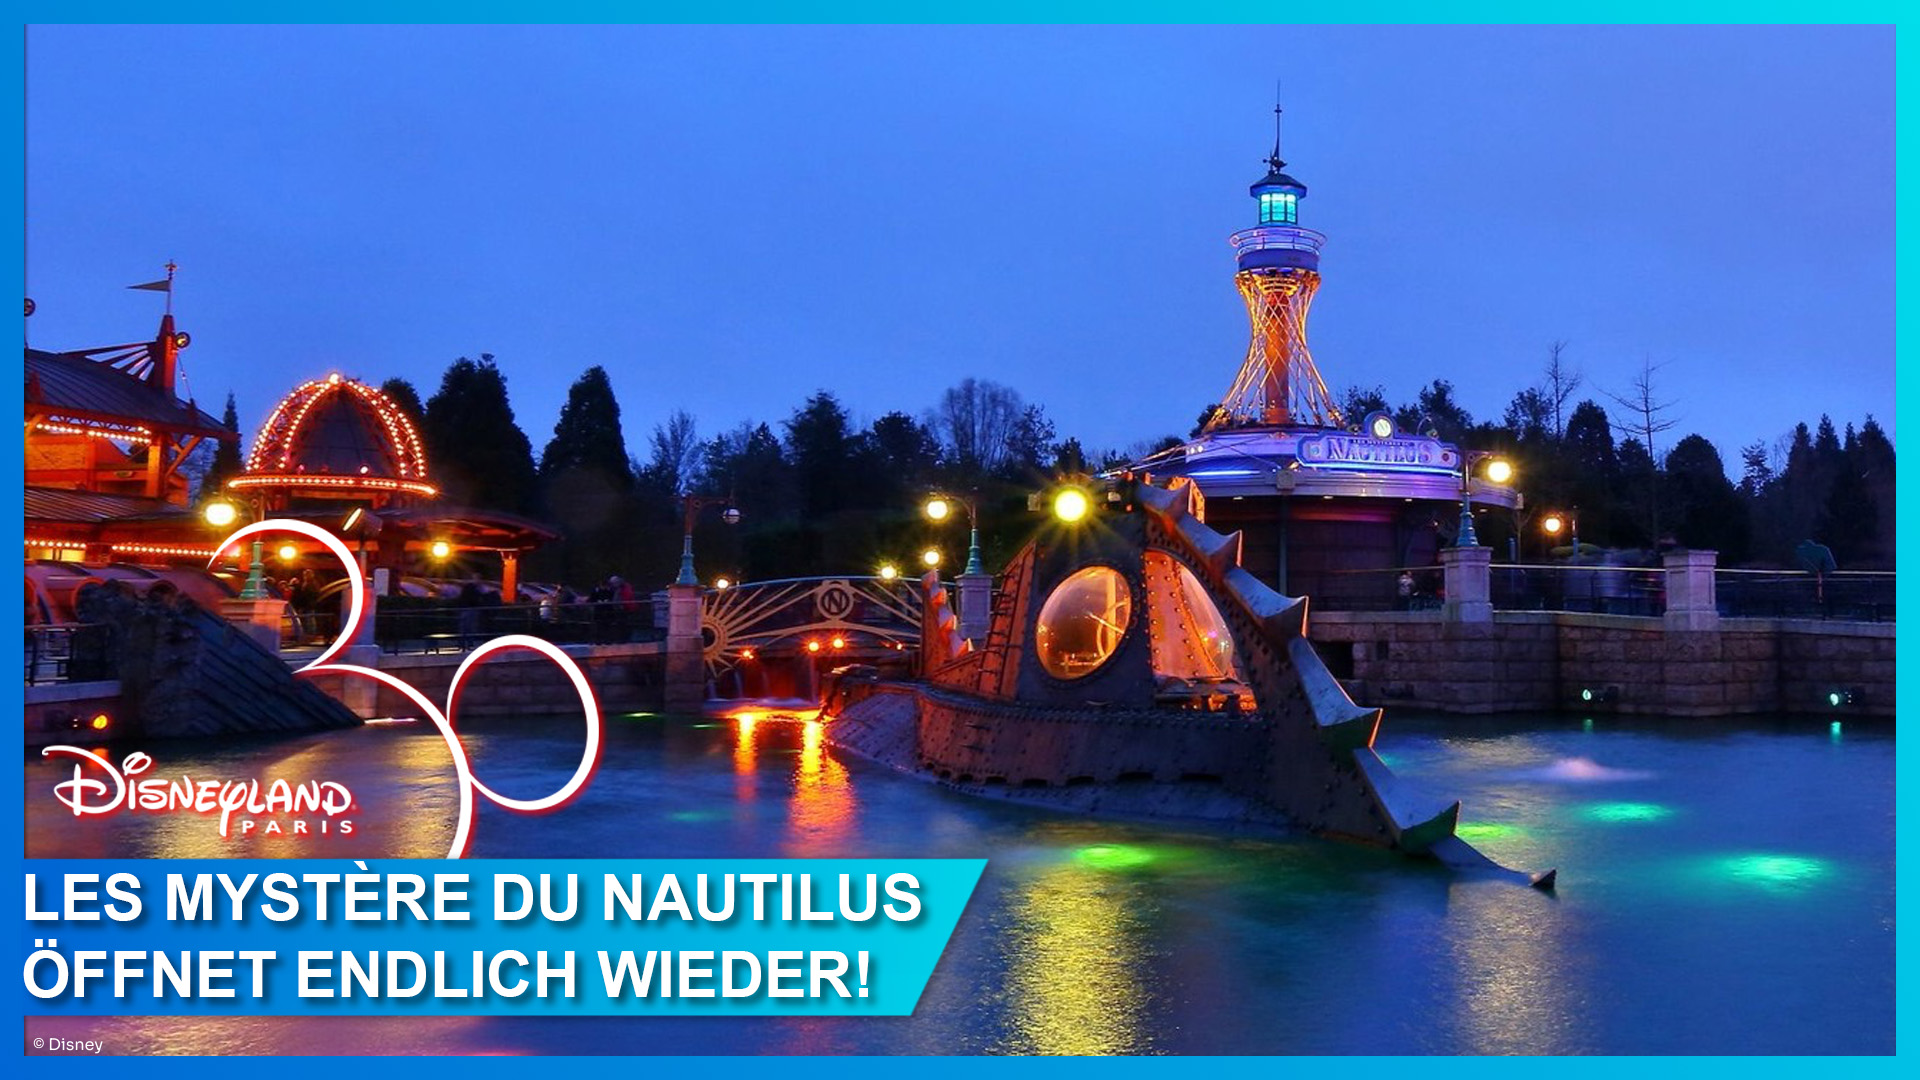 Les Mystère du Nautilus feiert am 1. Juli 2023 große Wiedereröffnung im Discoveryland von Disneyland Paris - Das Imagineering Team spricht im Interview über die Arbeiten